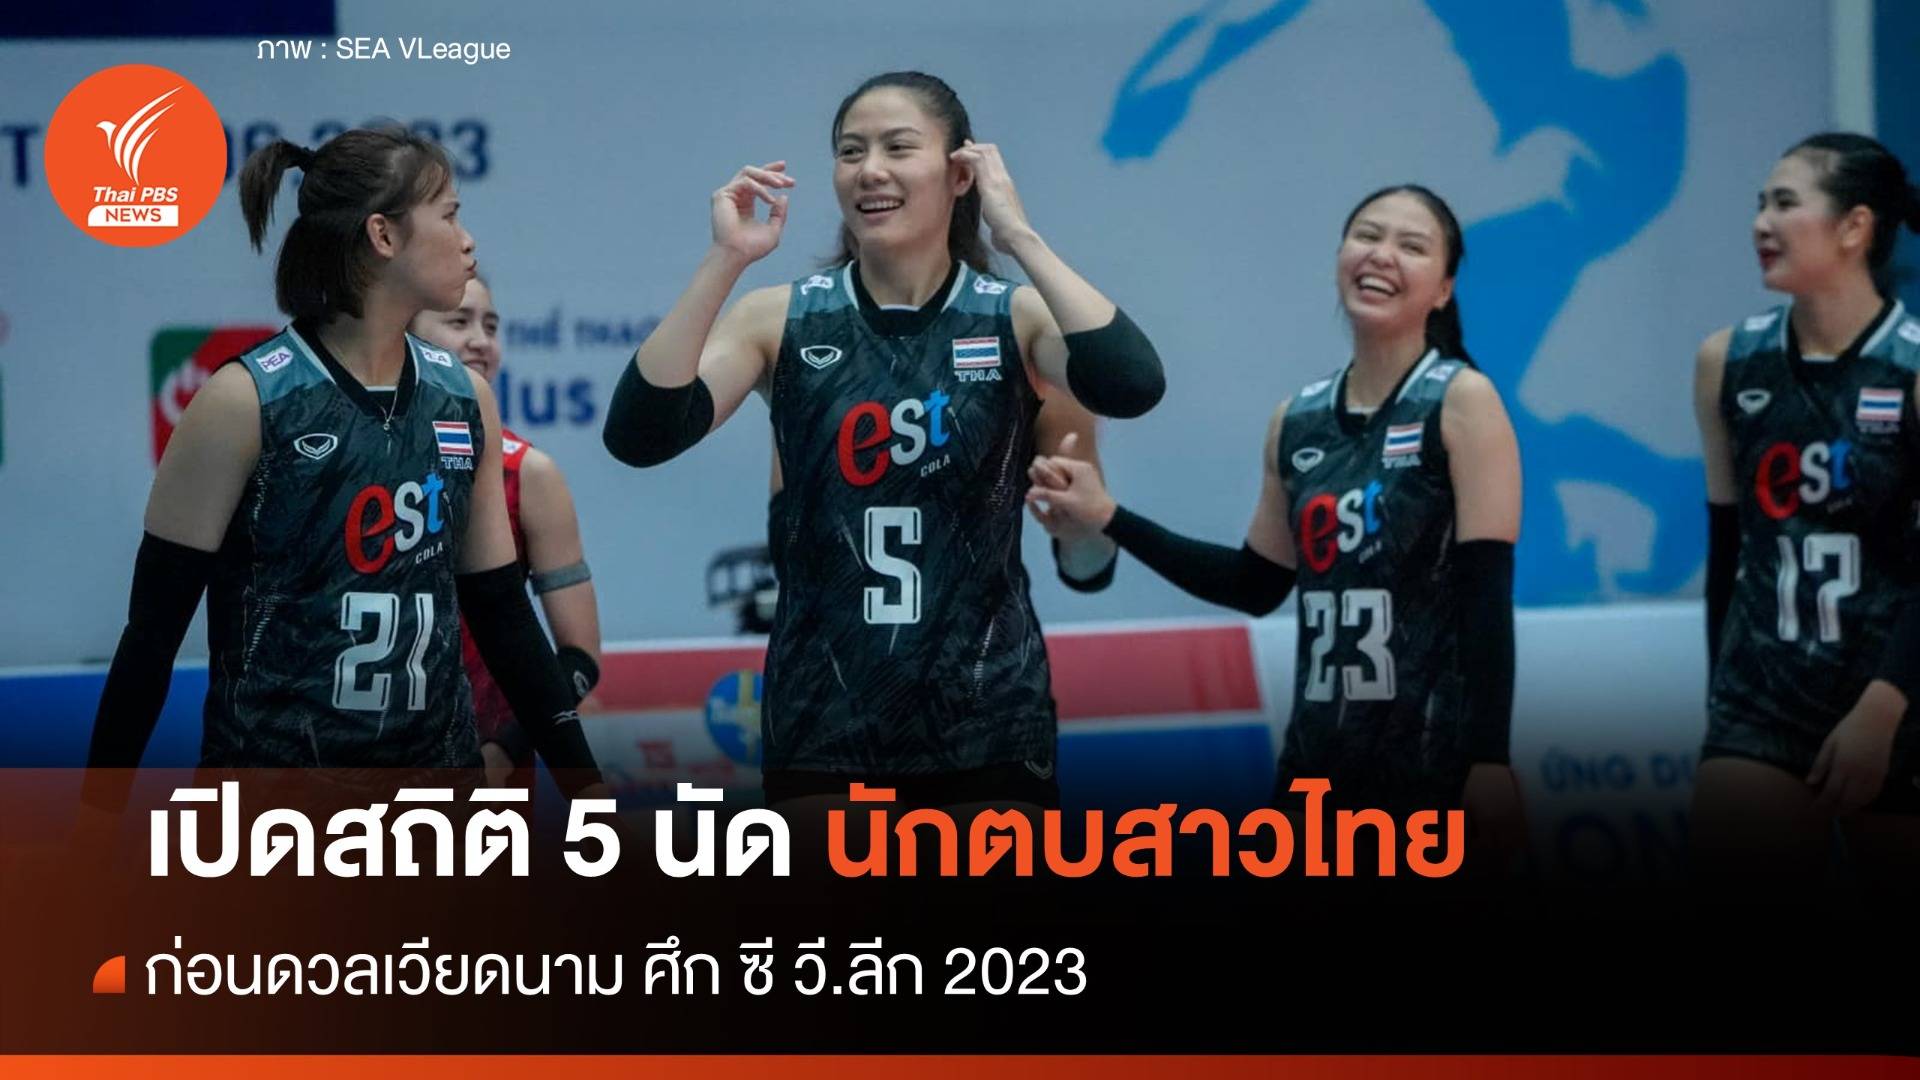 สถิติ 5 นัดวอลเลย์บอลหญิงไทย พบ เวียดนาม ศึก ซี วี.ลีก 2023